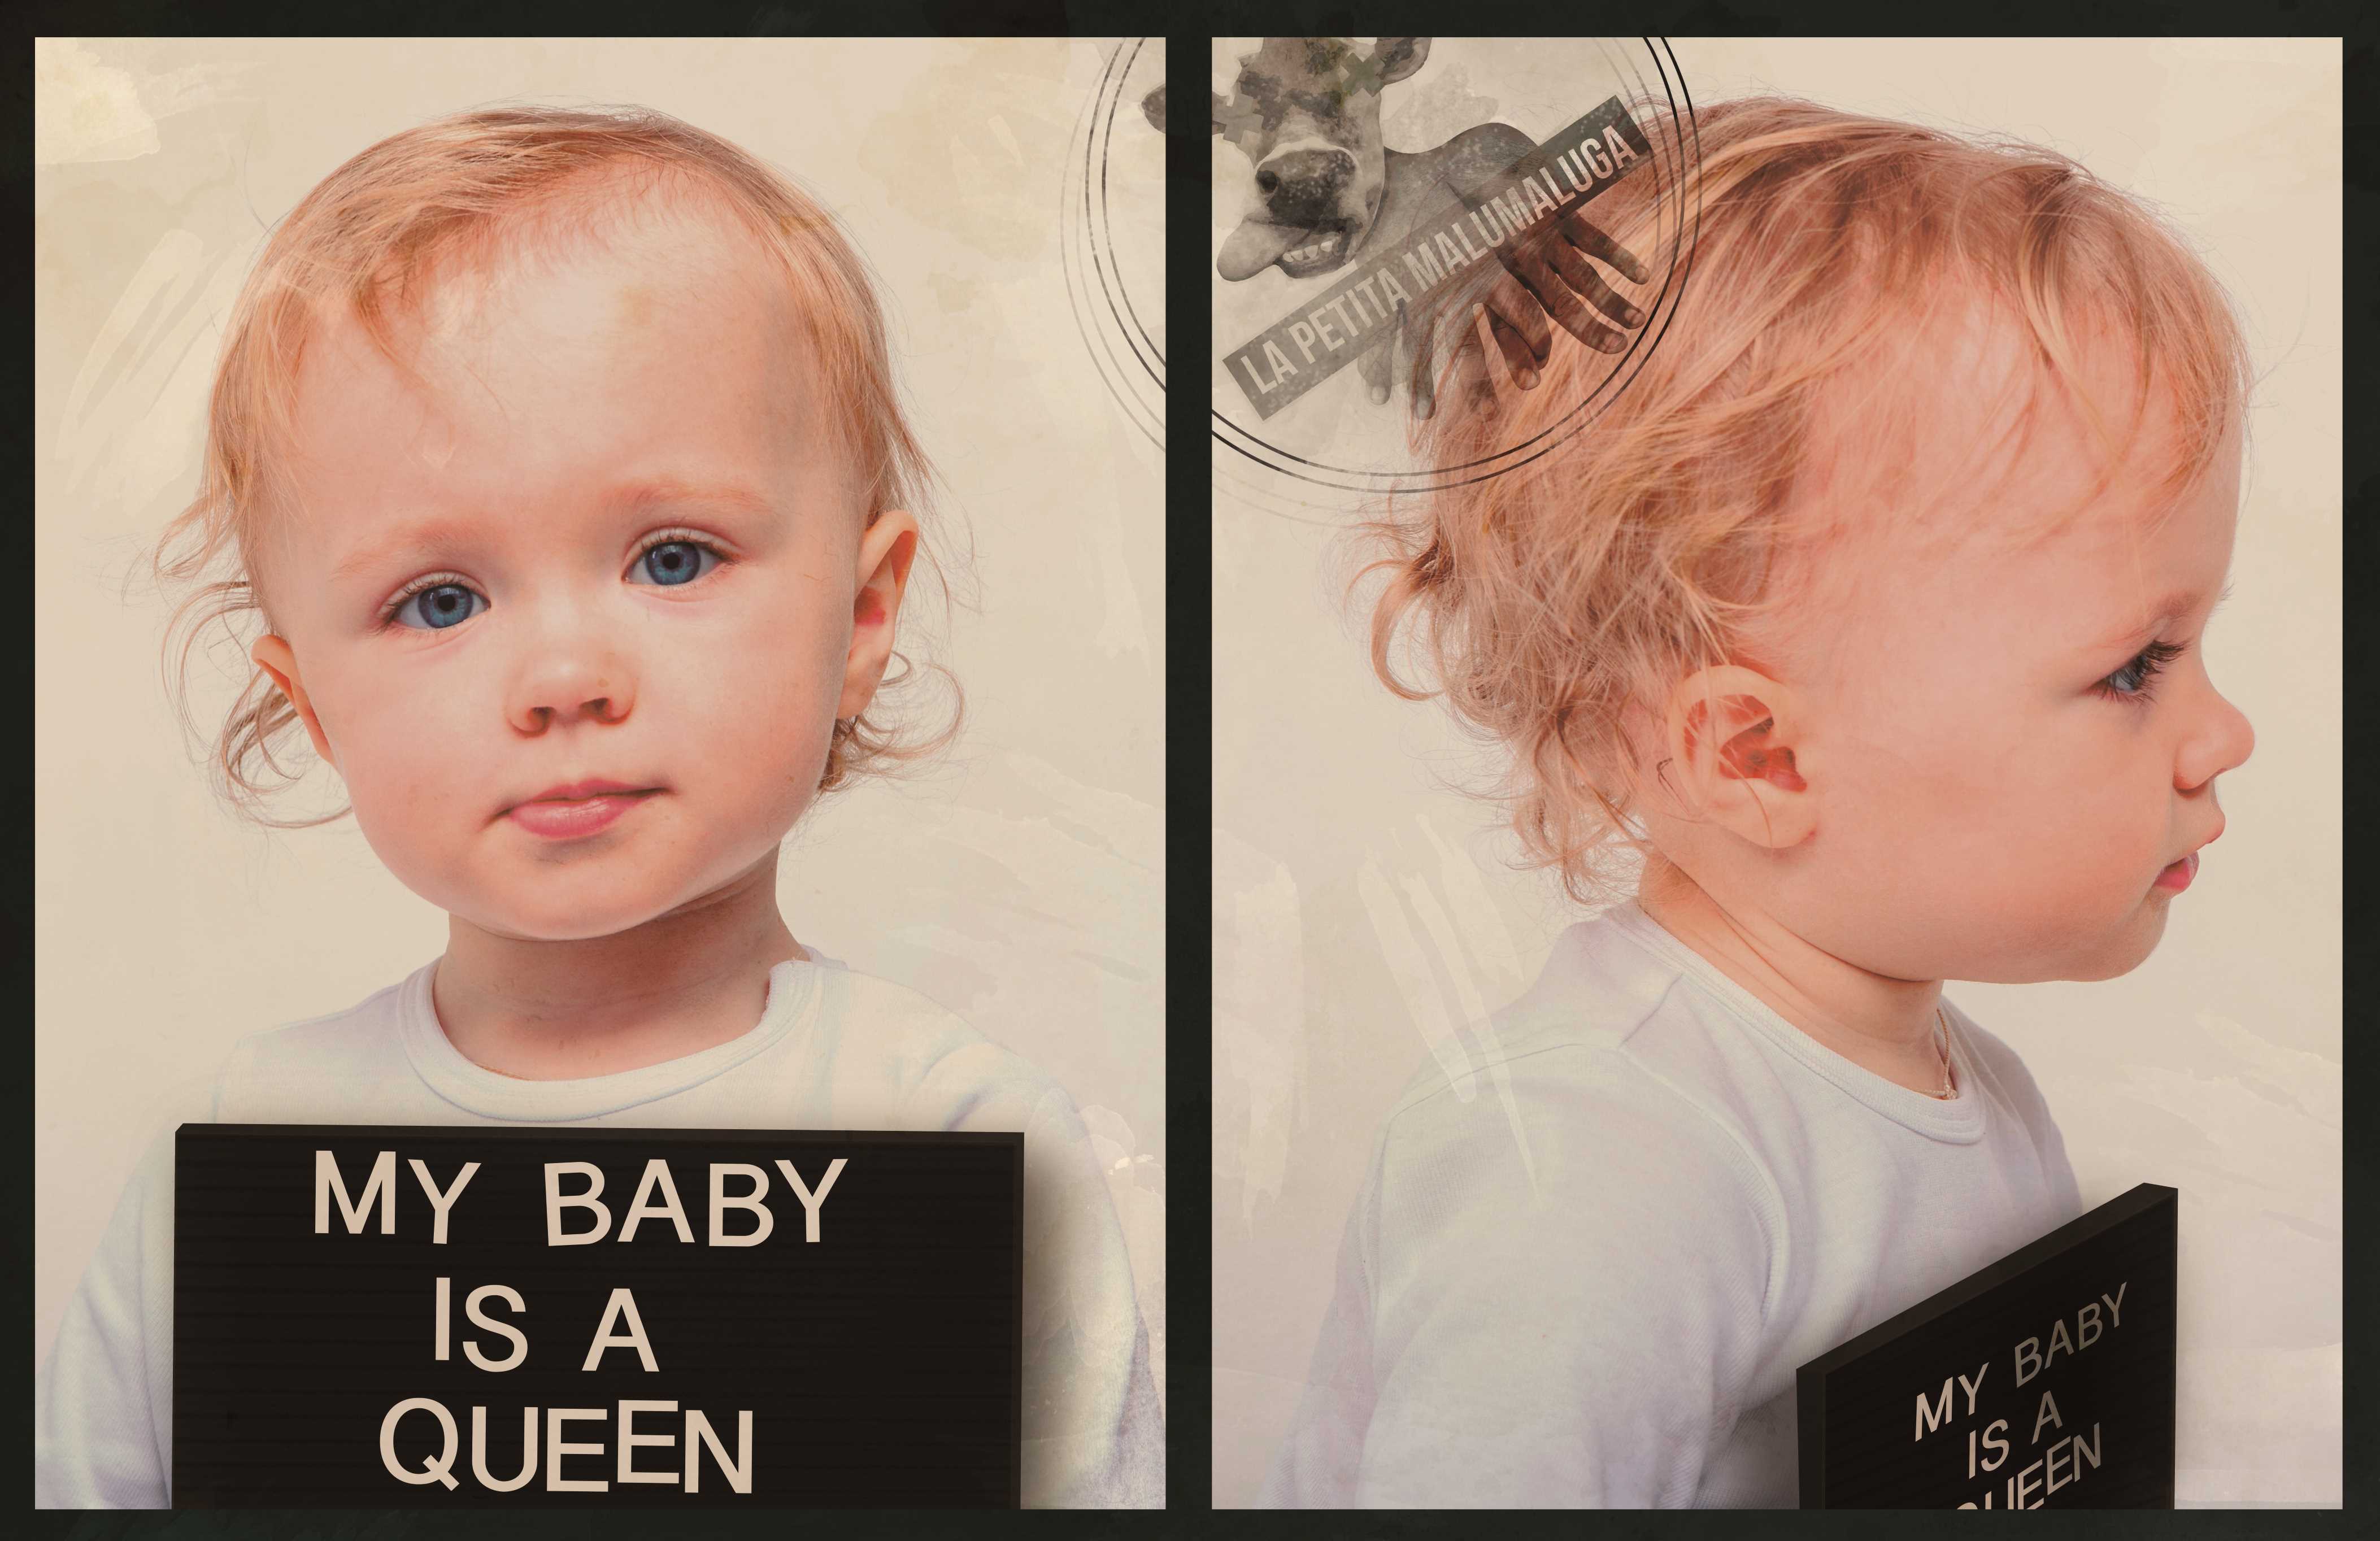 “My Baby Is a Queen” – Espacio Inestable